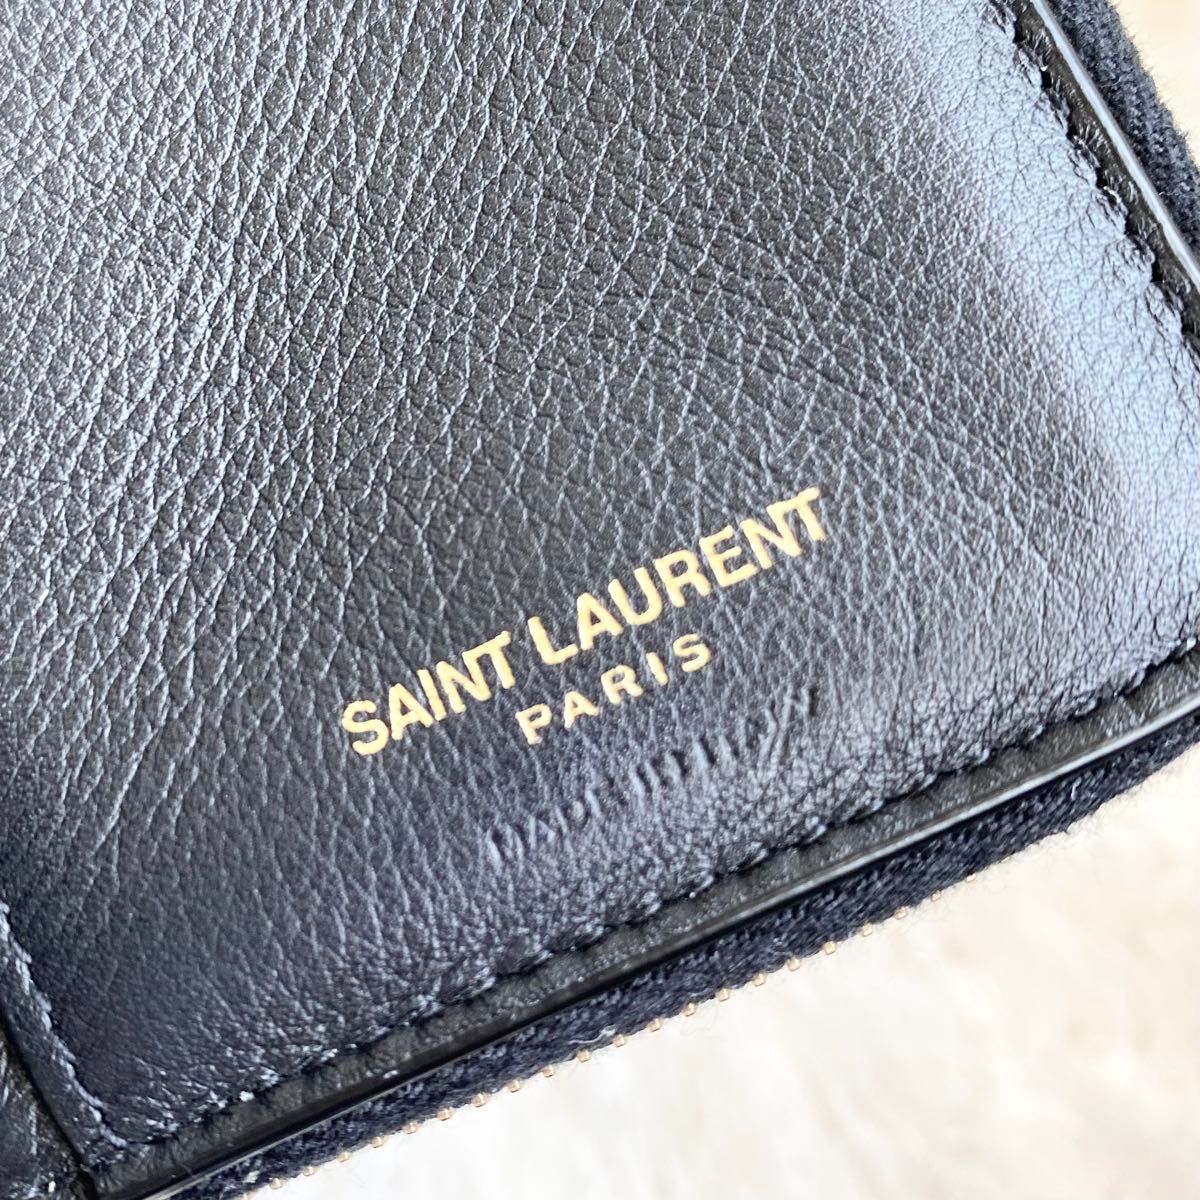 ★美品★サンローラン Saint Laurent YSL 財布 カサンドラ レザー ブラック